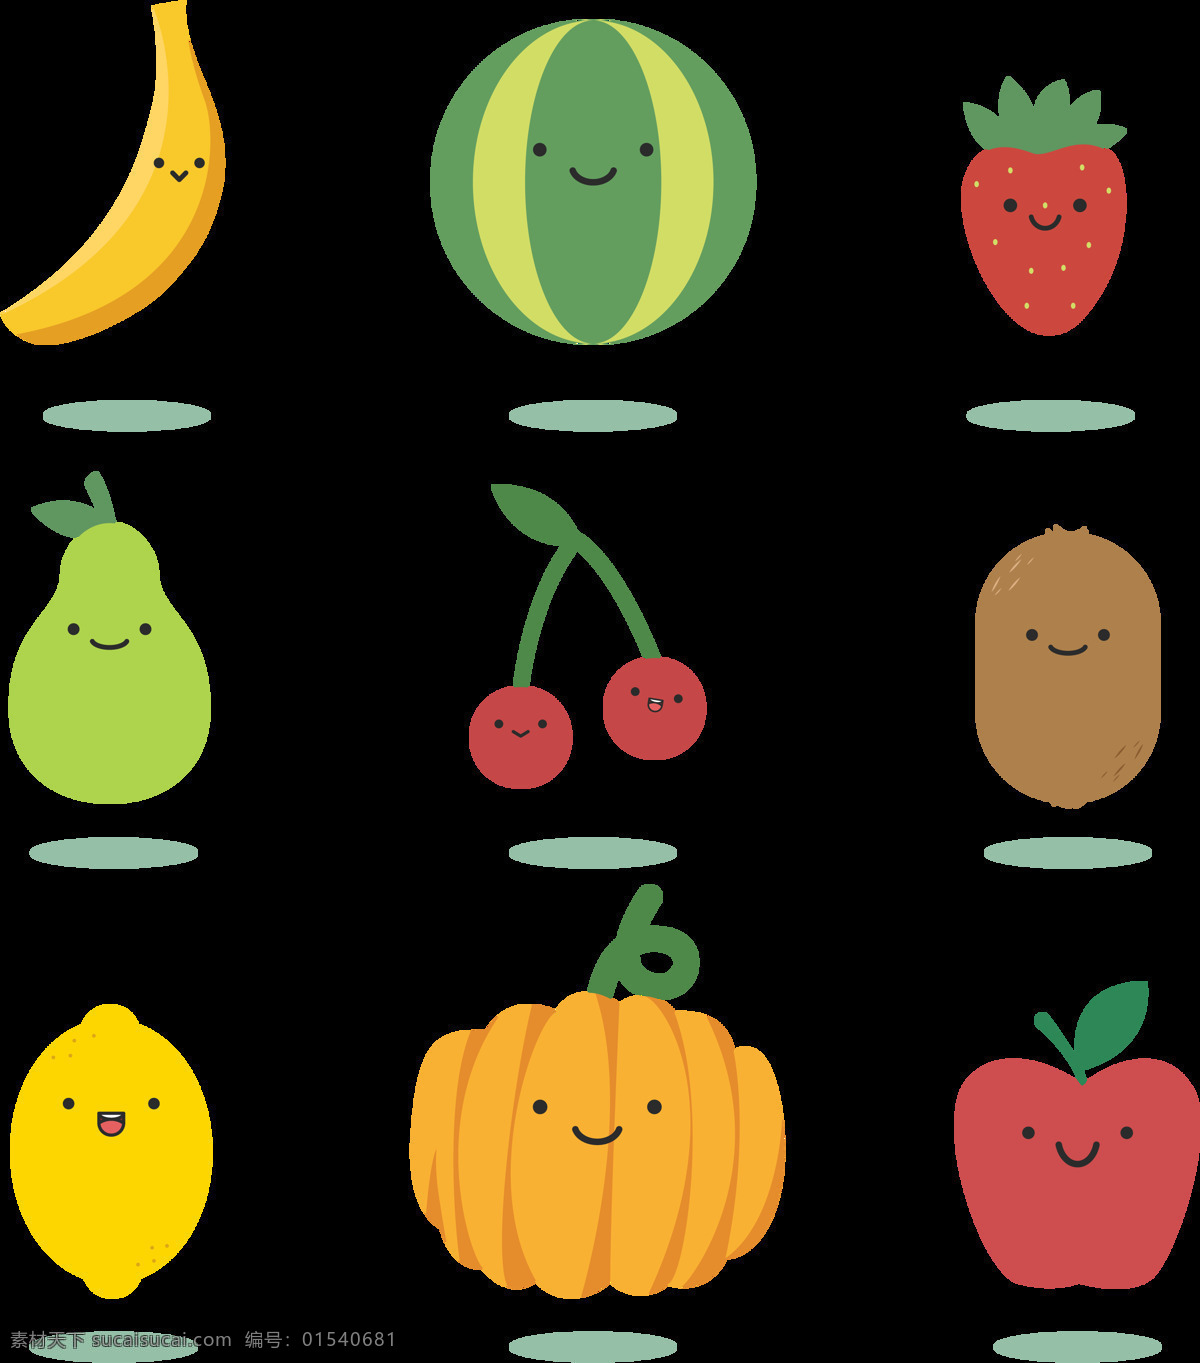 各种 水果 表情 图标 免 抠 透明 图 层 彩色水果 水果手绘 彩色素材 彩色手绘 清新素材 手绘水果素材 夏日 彩色 手绘水果 水果素材 手绘素材 清新水果 素材水果